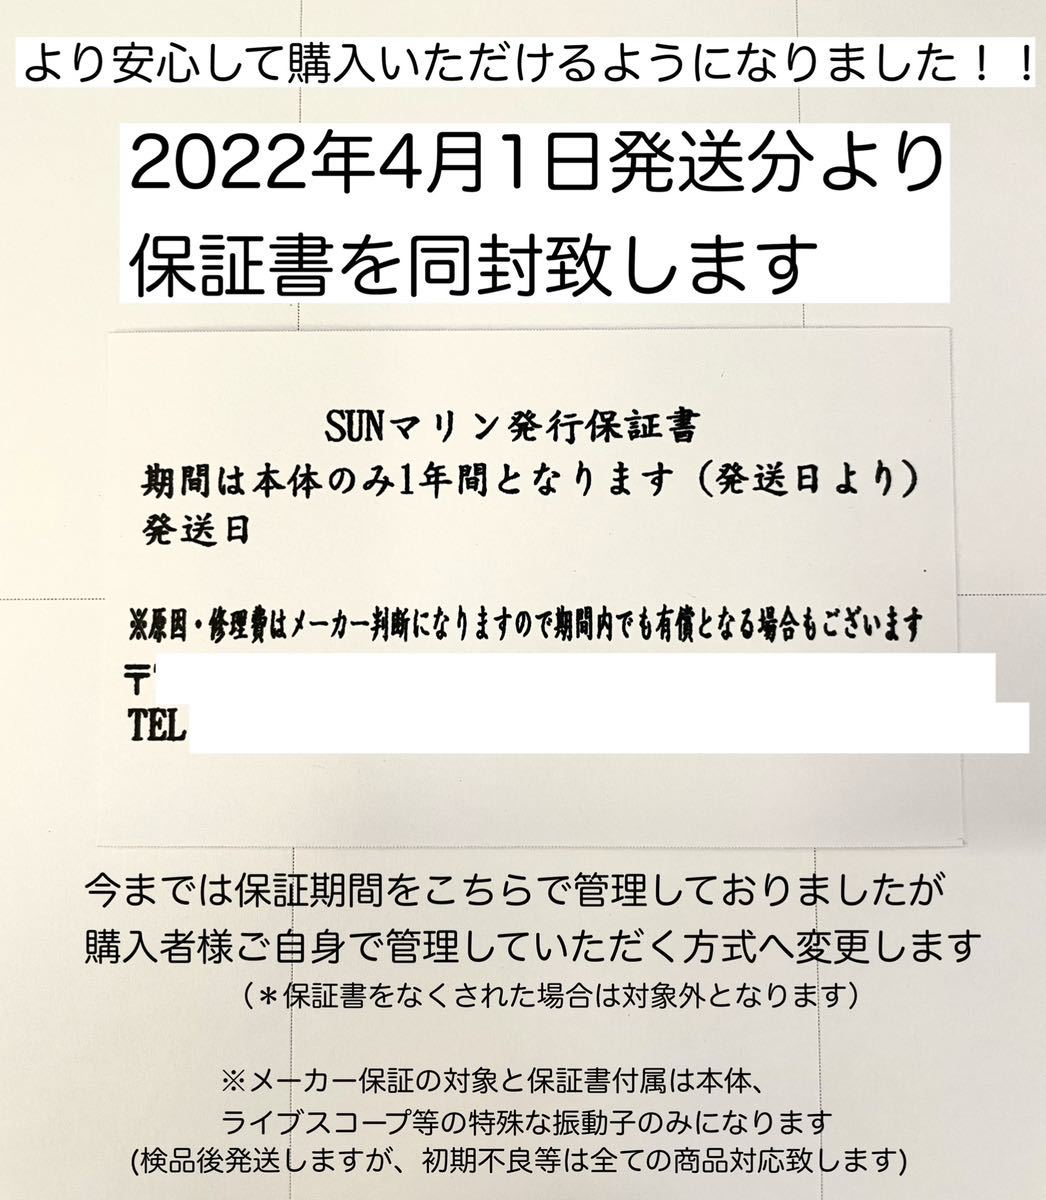  новейший тип! Garmin eko карта Ultra 2 10 дюймовый японский язык отображать возможность!